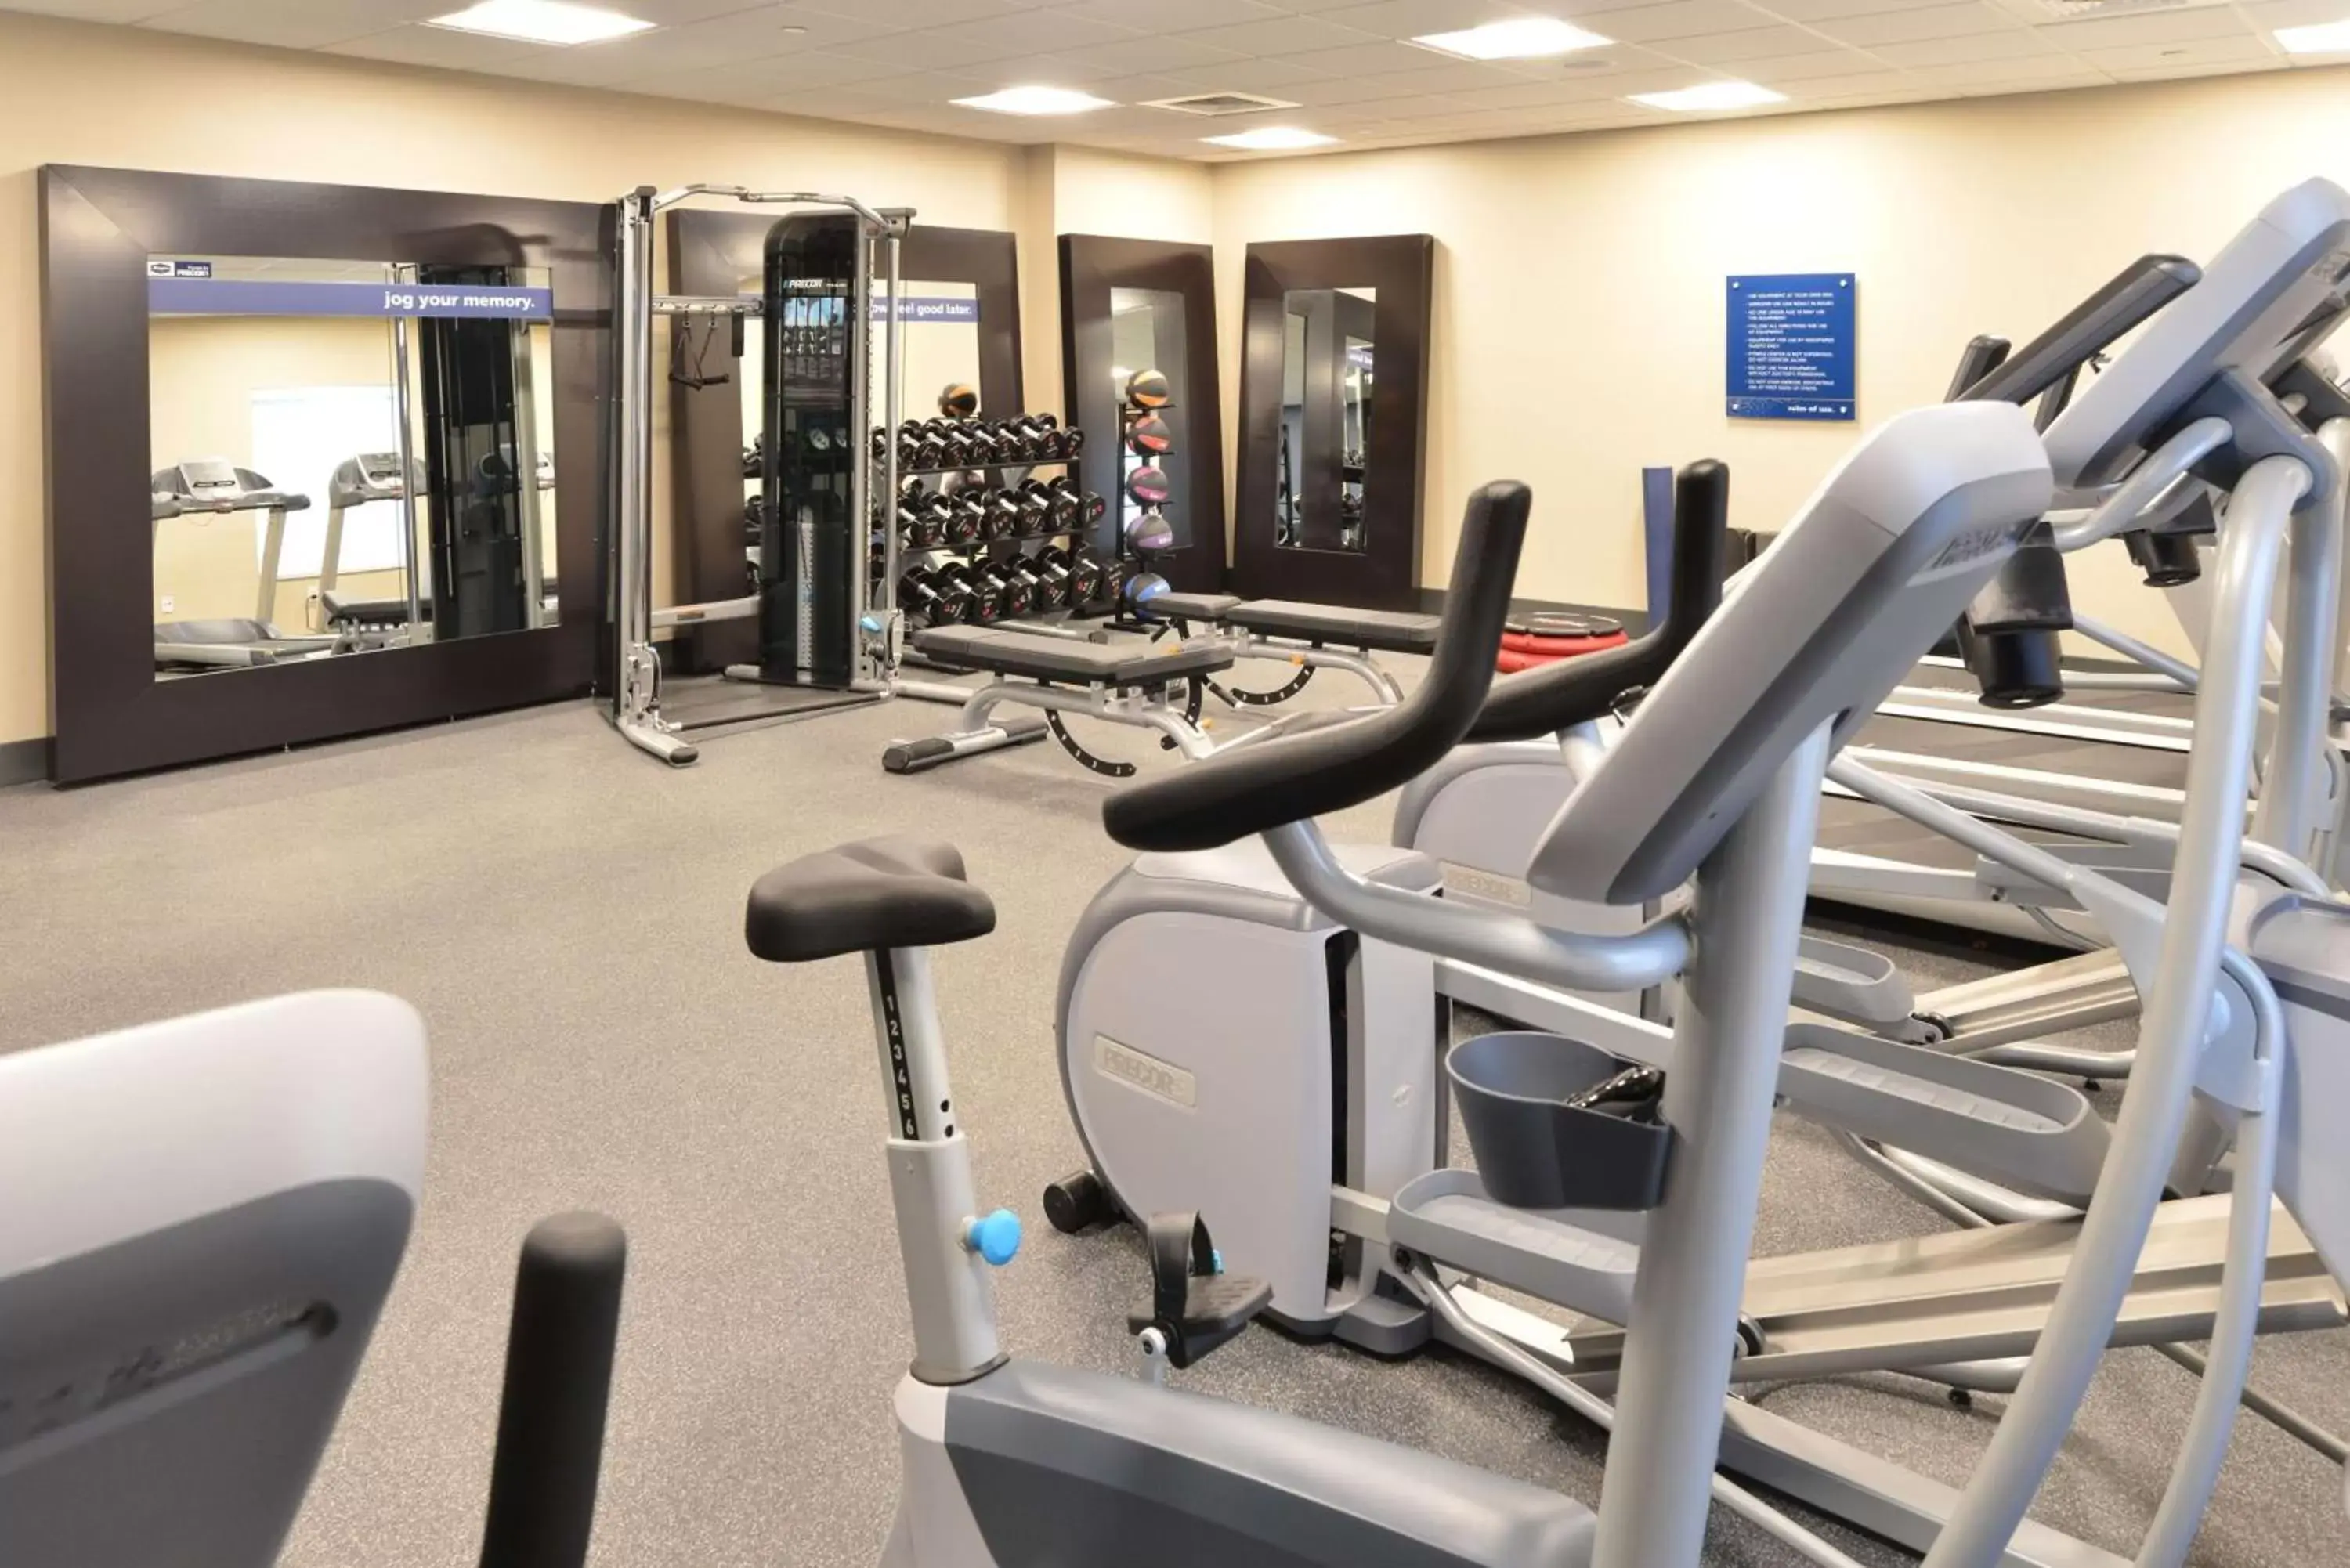 Fitness centre/facilities, Fitness Center/Facilities in Hampton Inn & Suites Menomonie-UW Stout